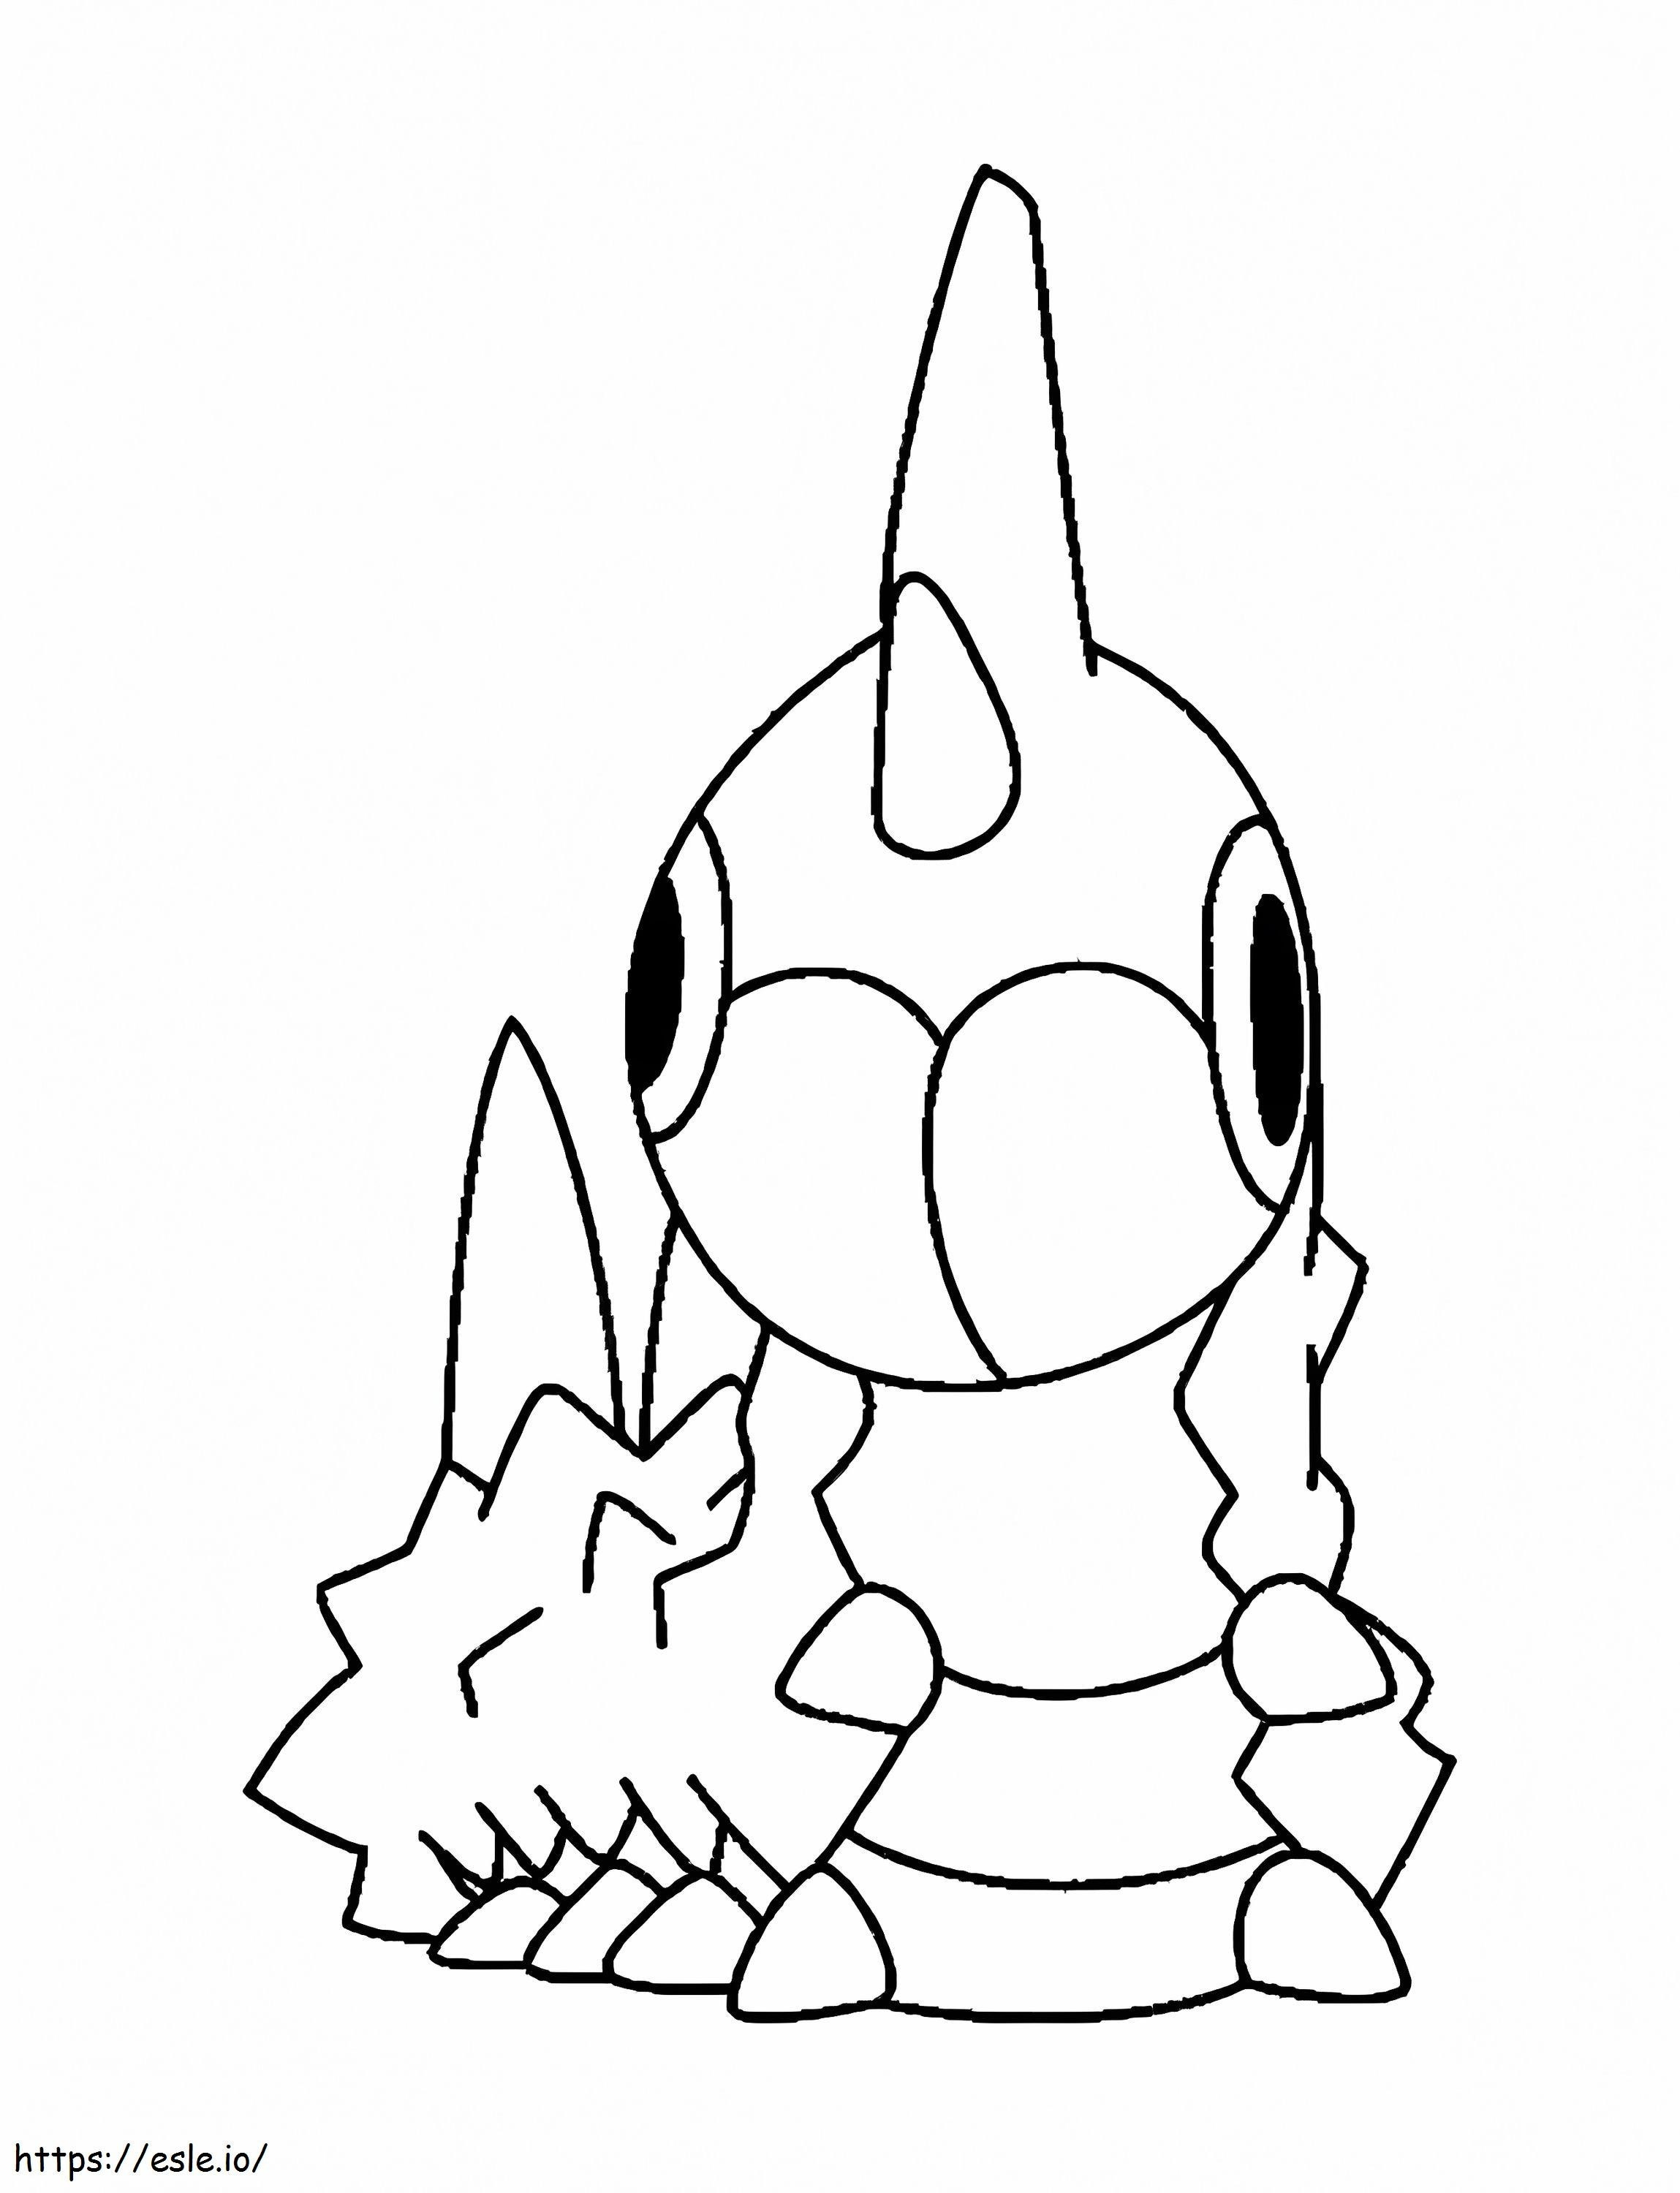 Coloriage Pokémon Wurmple Gen 3 à imprimer dessin